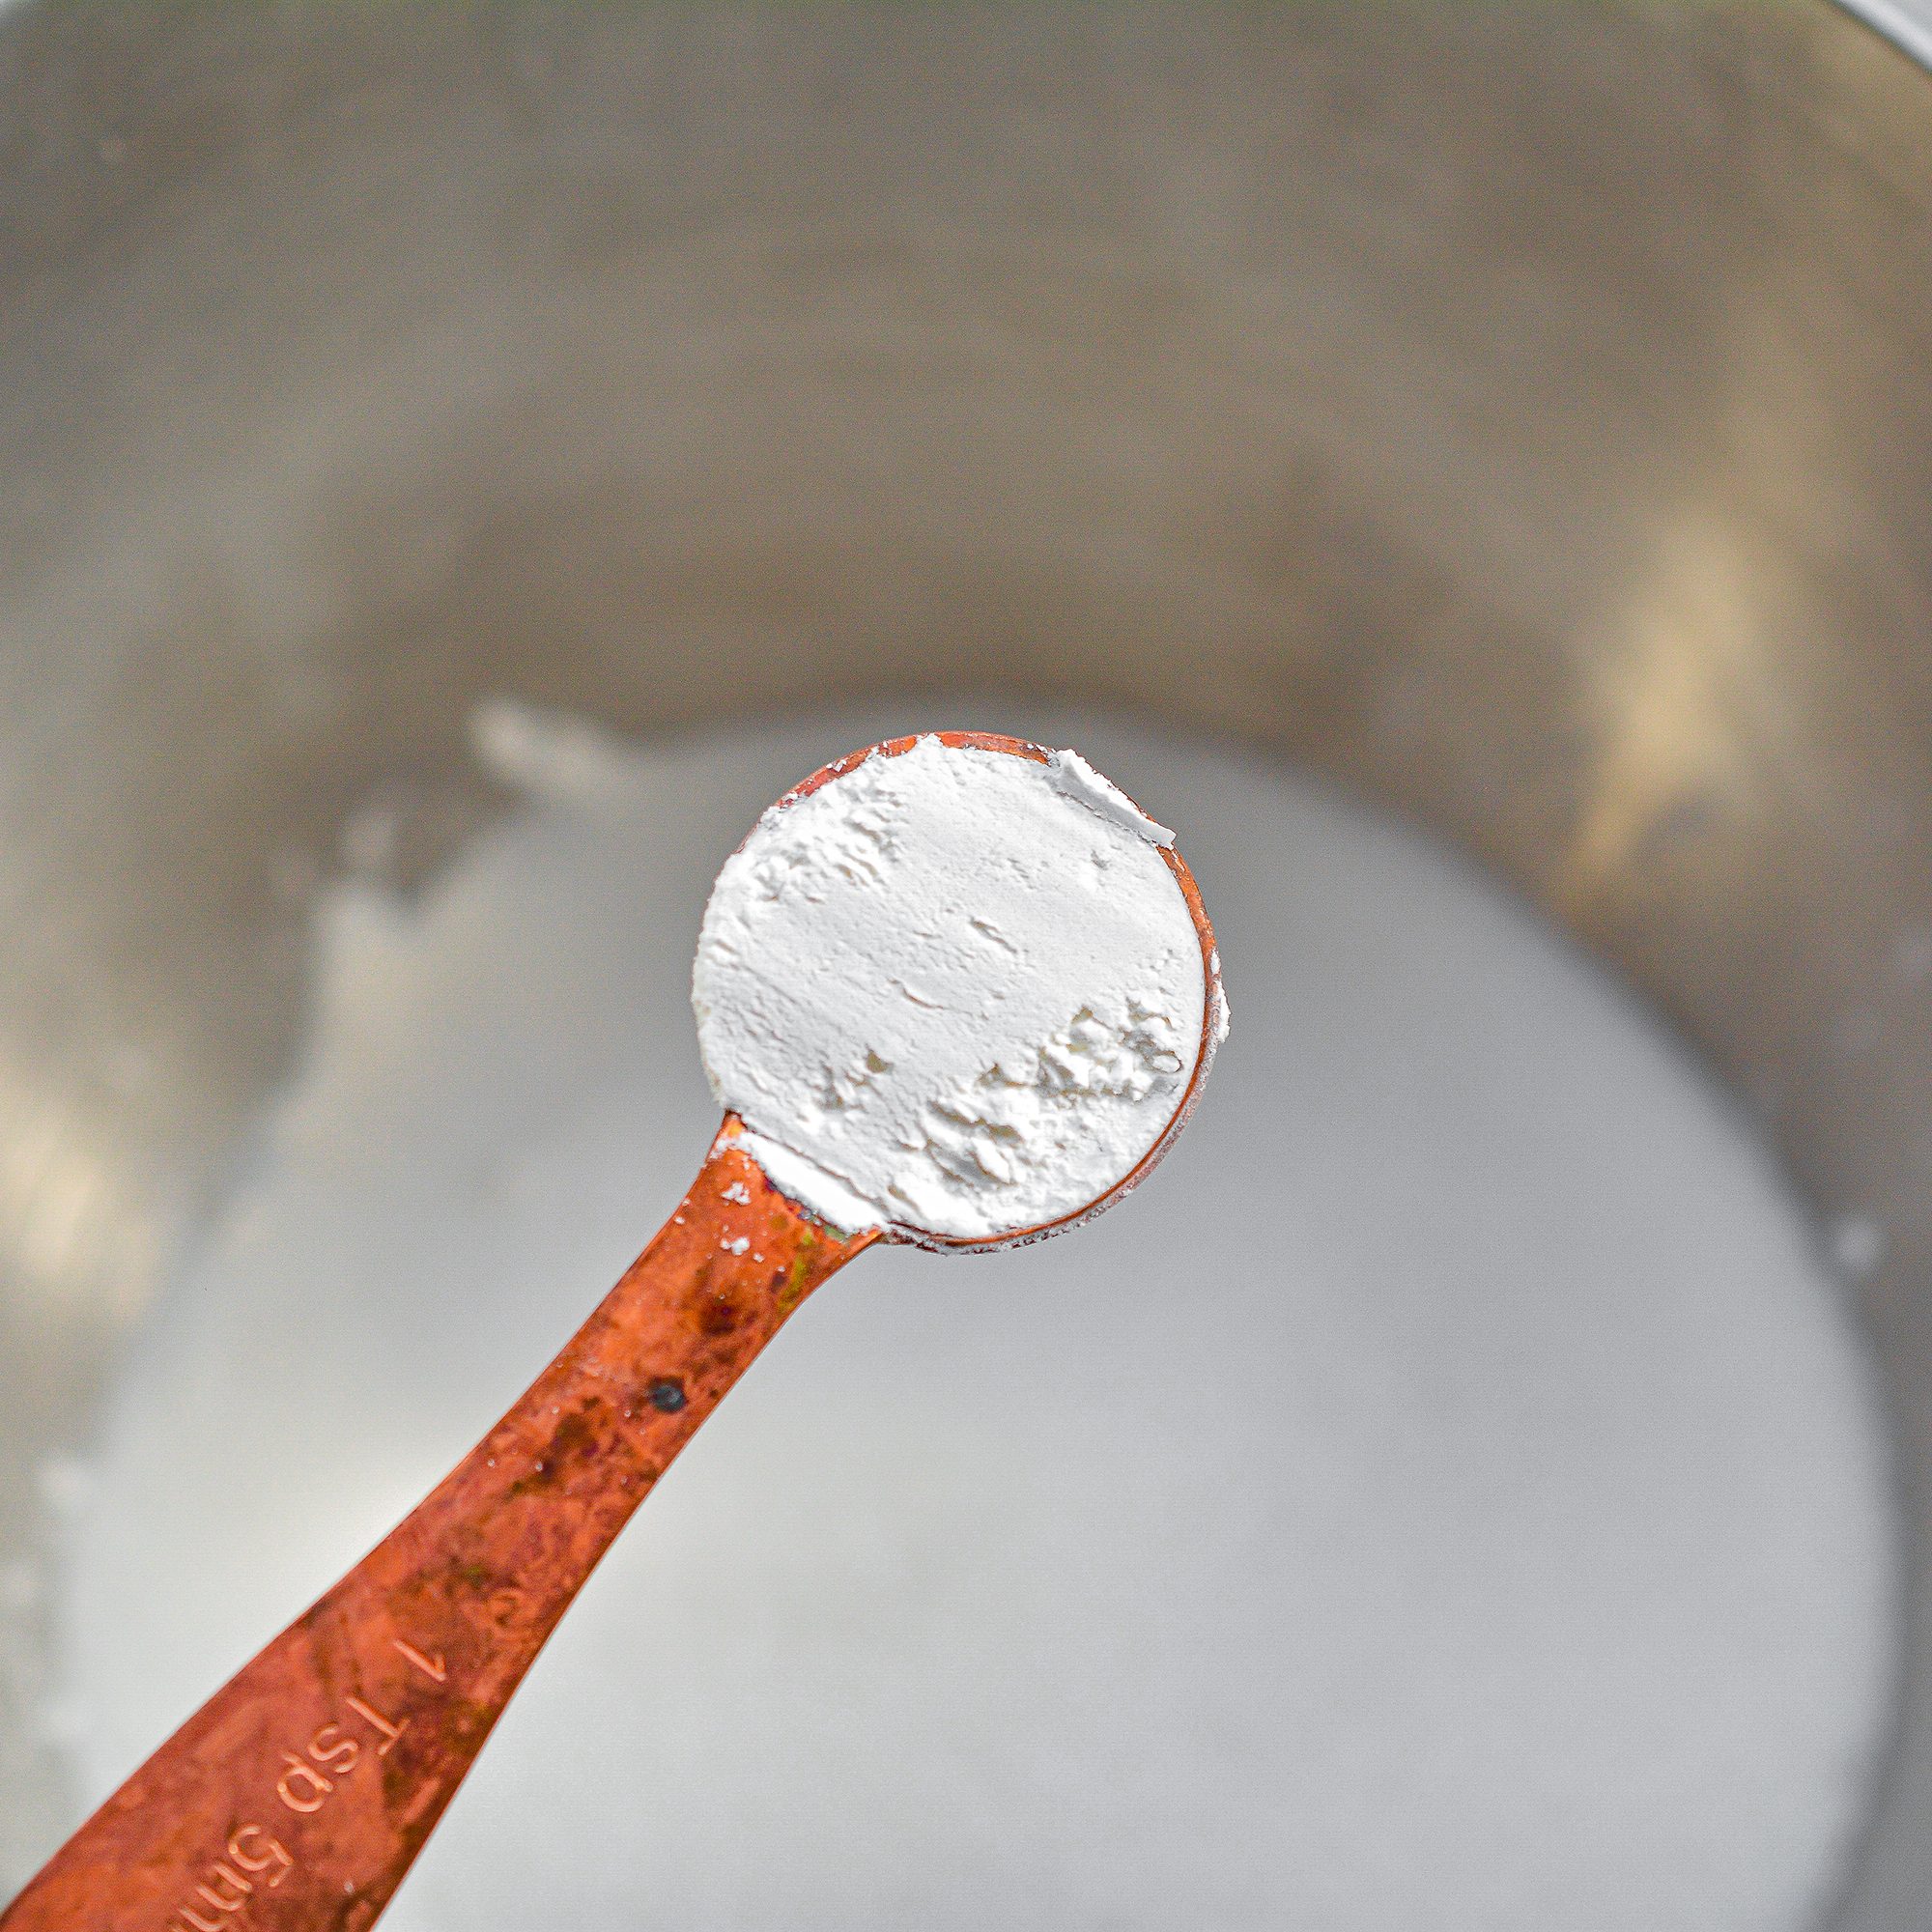 Adding baking powder